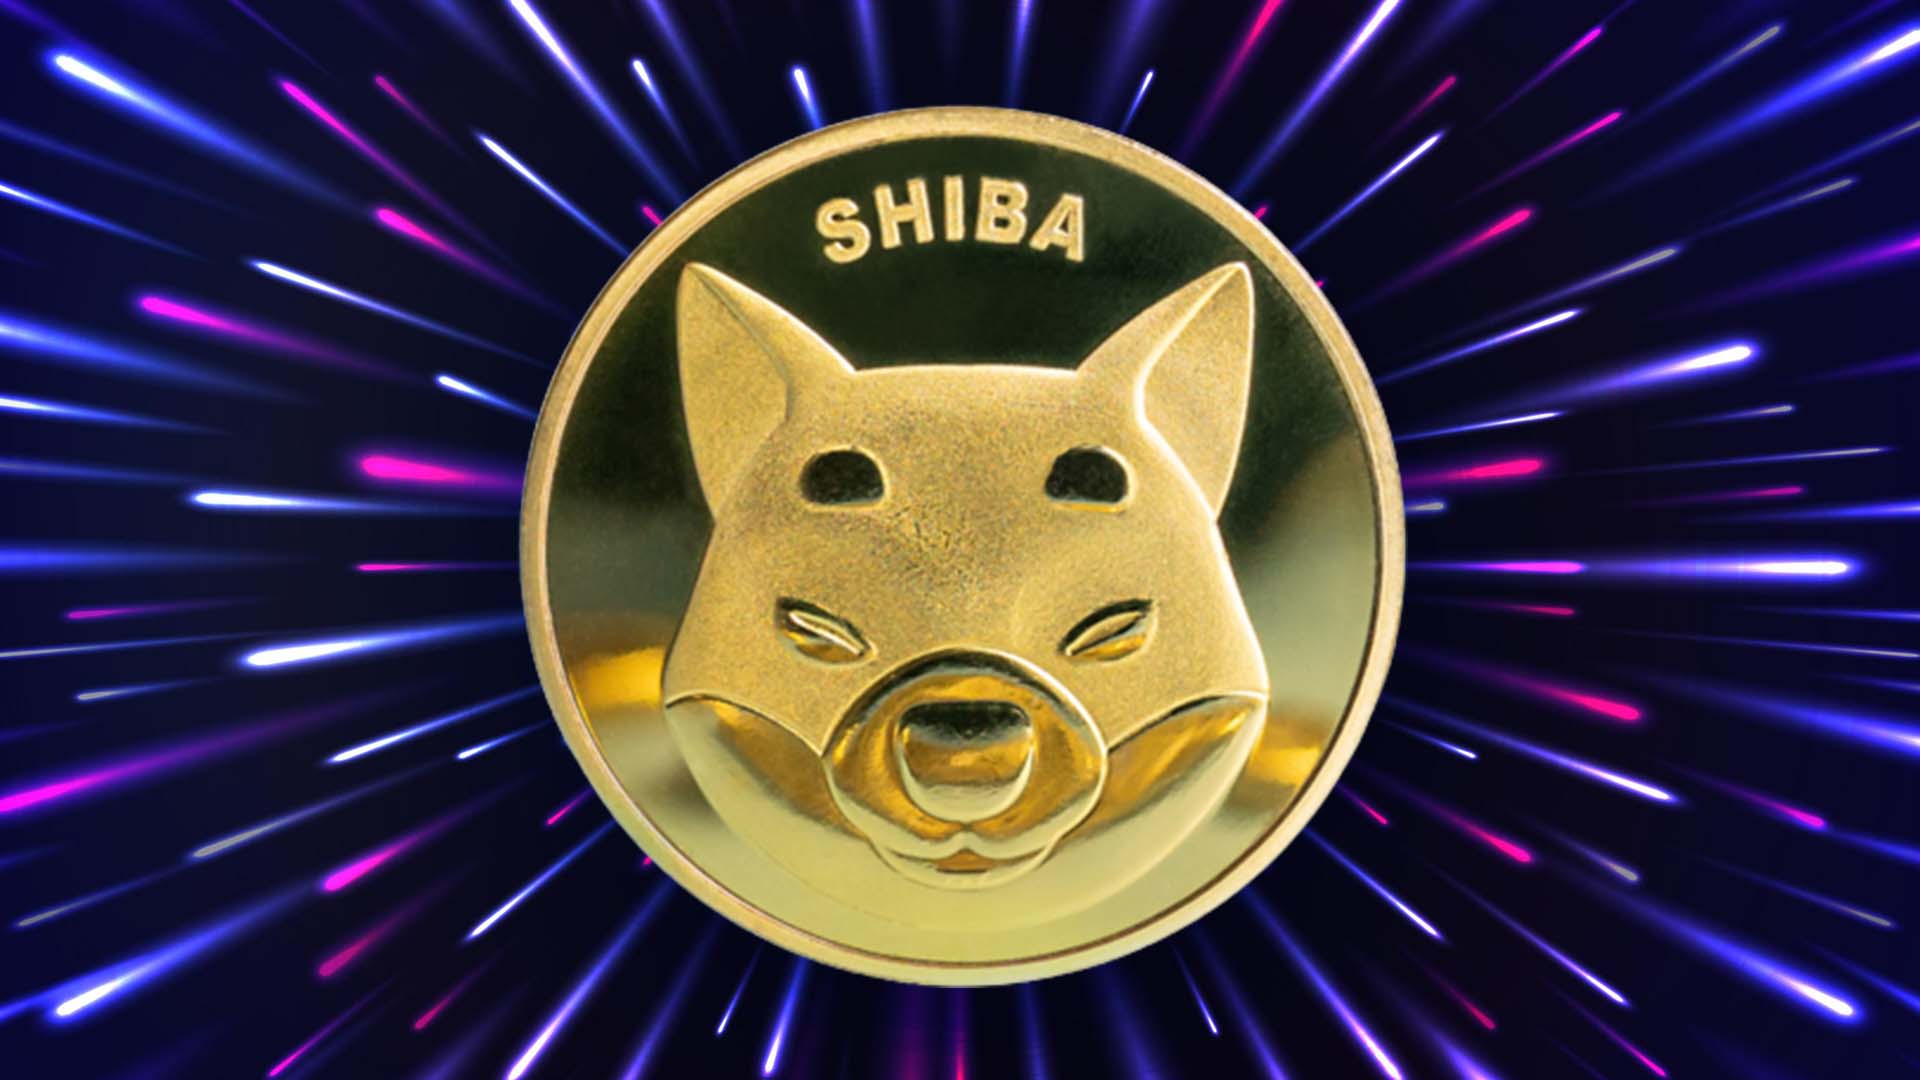 Shiba Inu Price Prediction: Tremendous Change in Trading Volume, Will SHIB Reach $1.00?